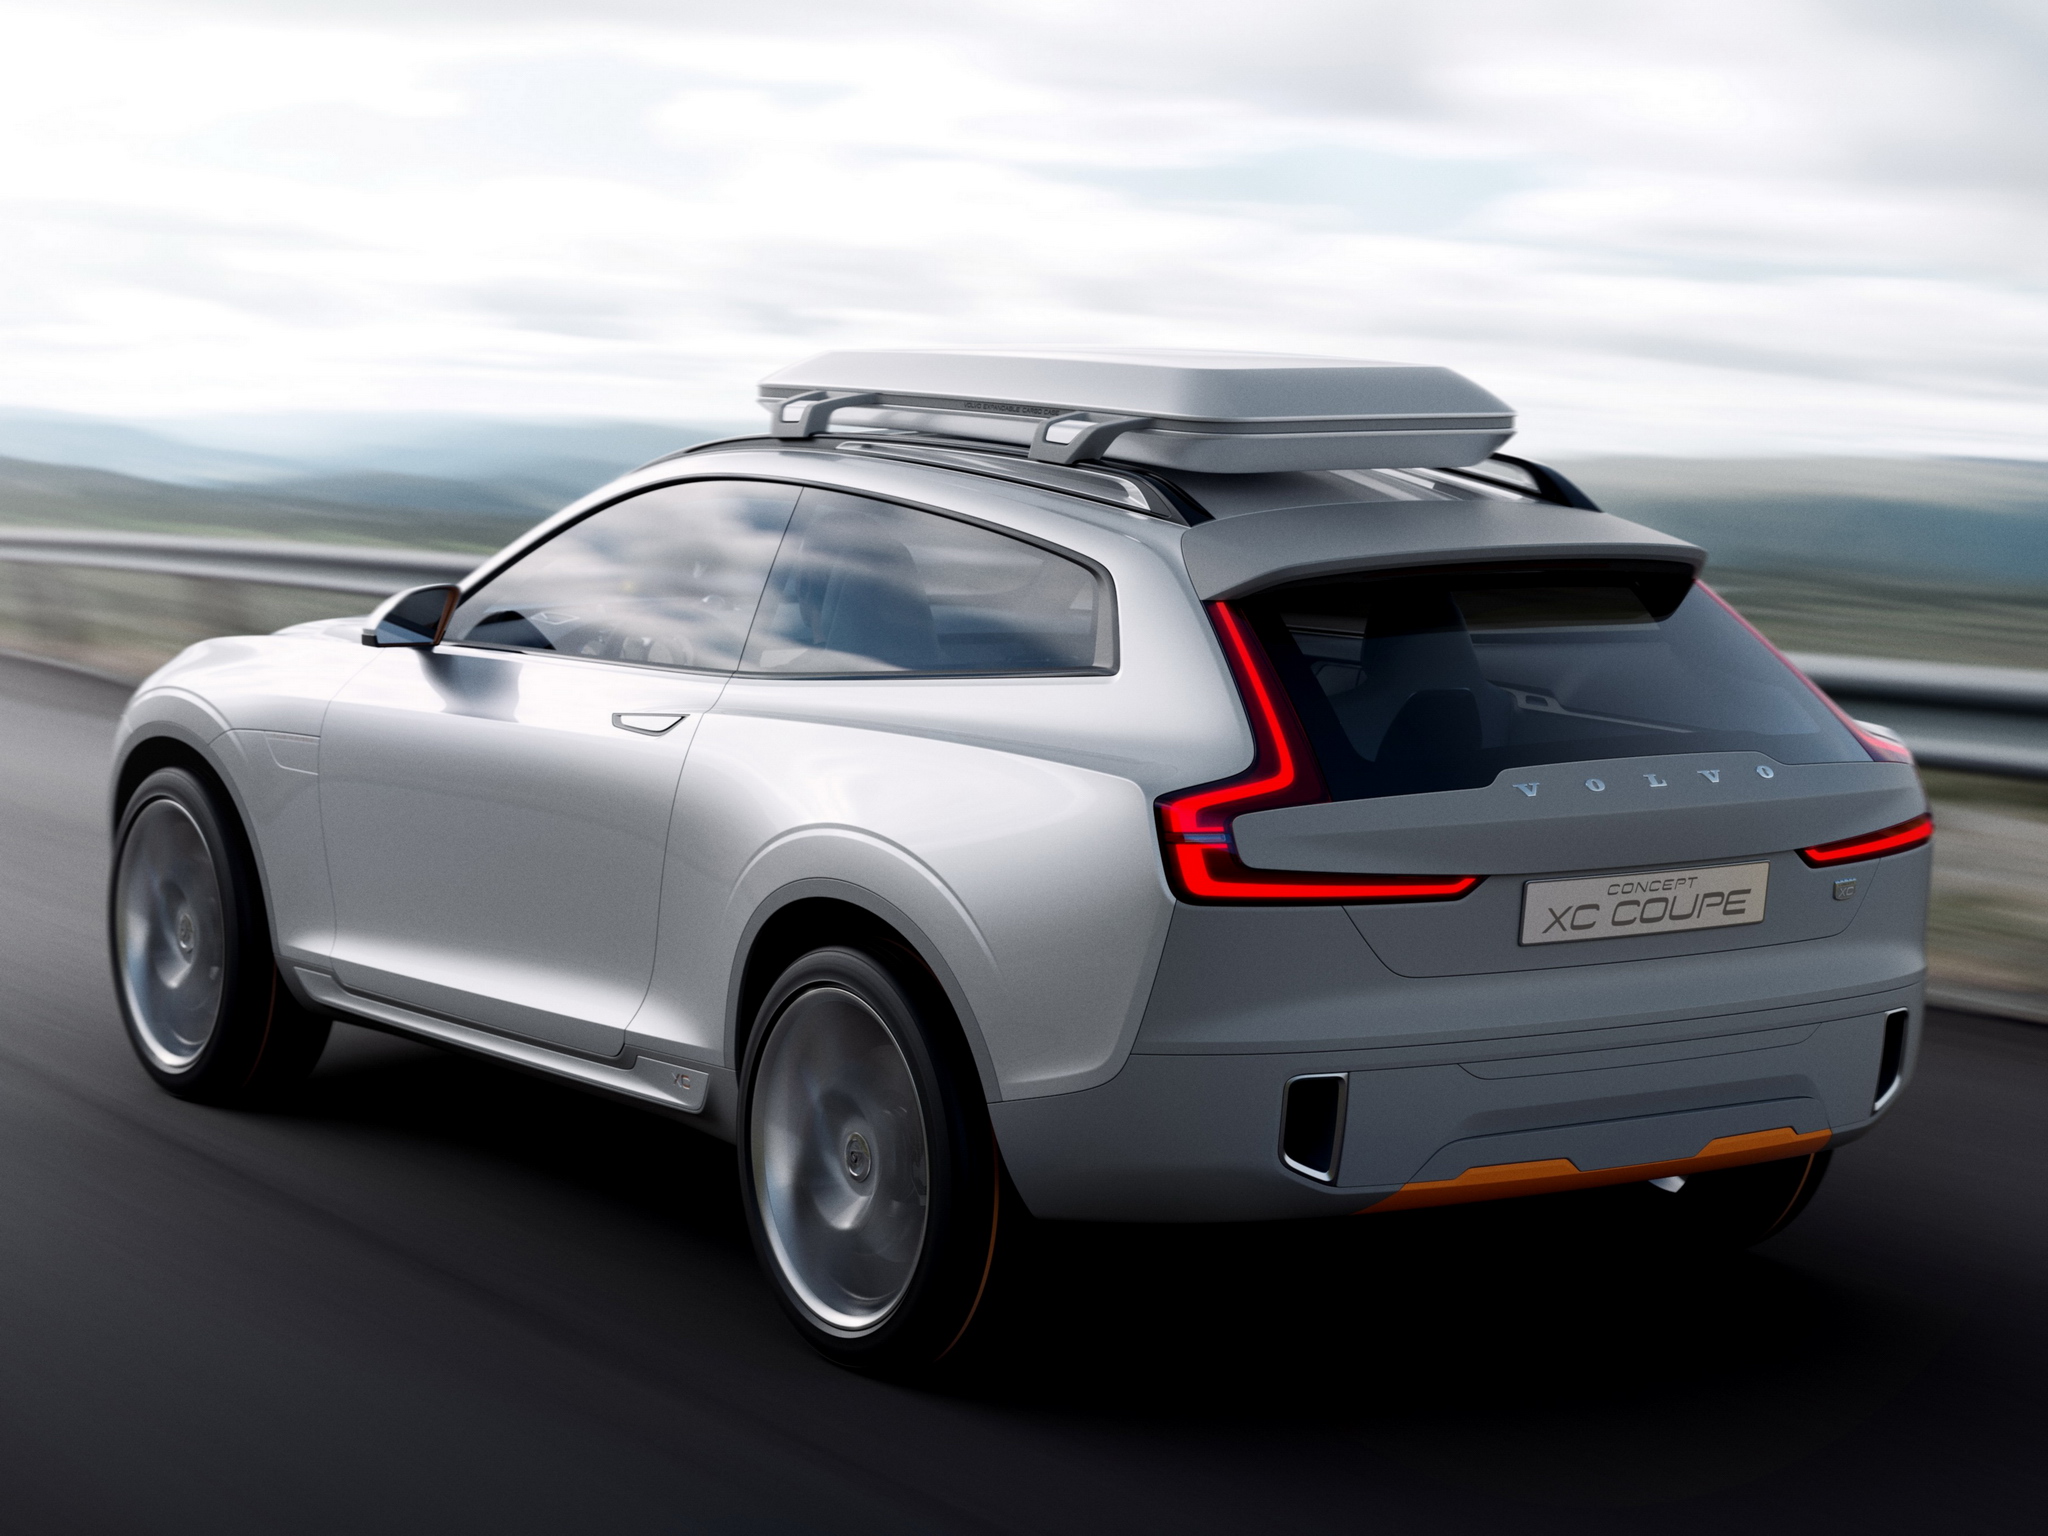 2014, Volvo, Concept, X c, Coupe Wallpaper